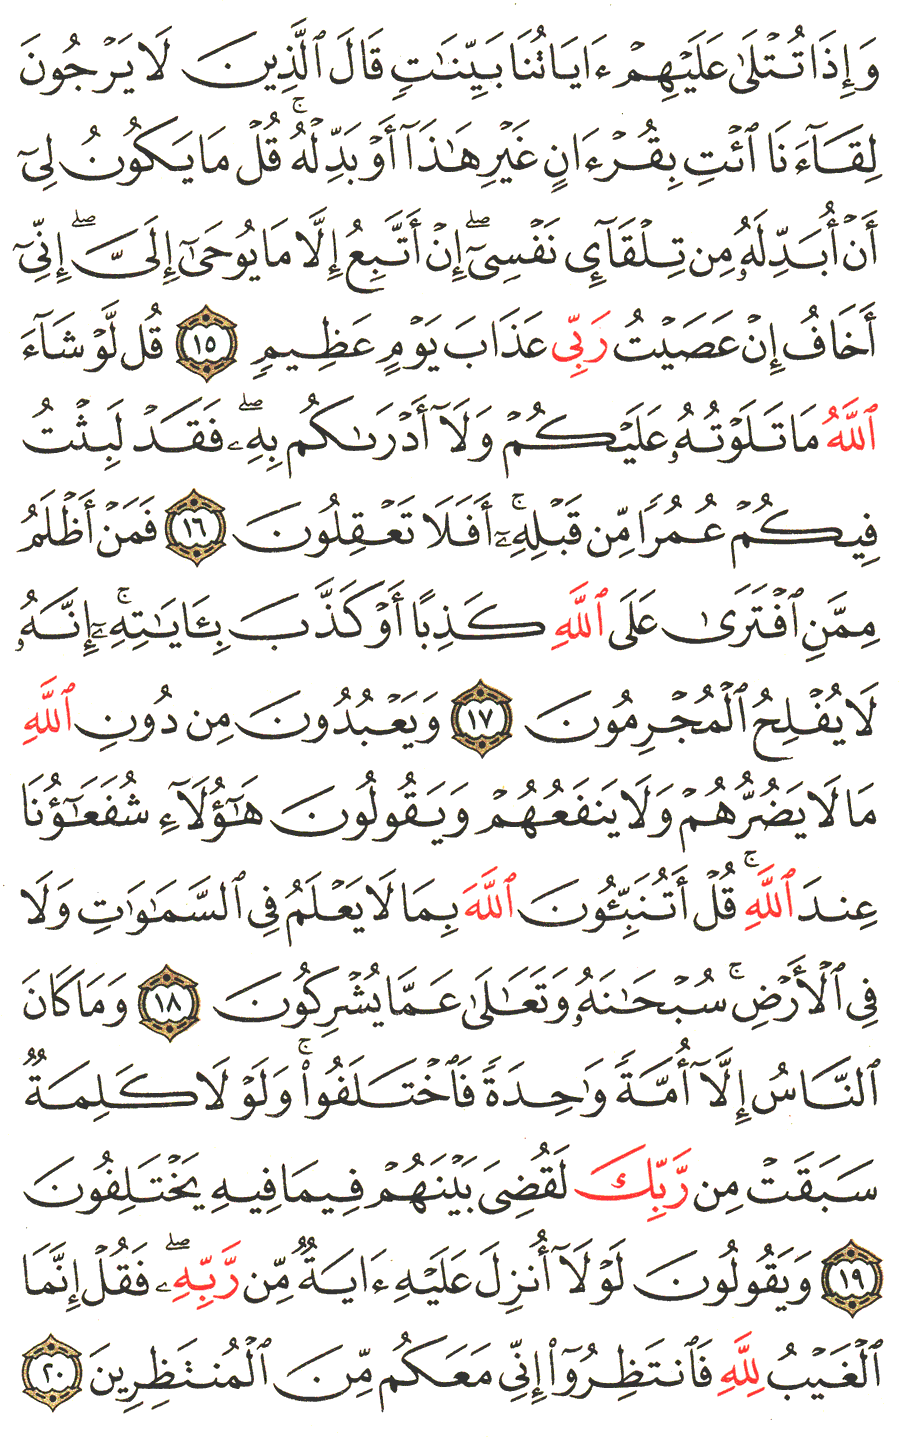 الصفحة رقم 210  من القرآن الكريم مكتوبة من المصحف